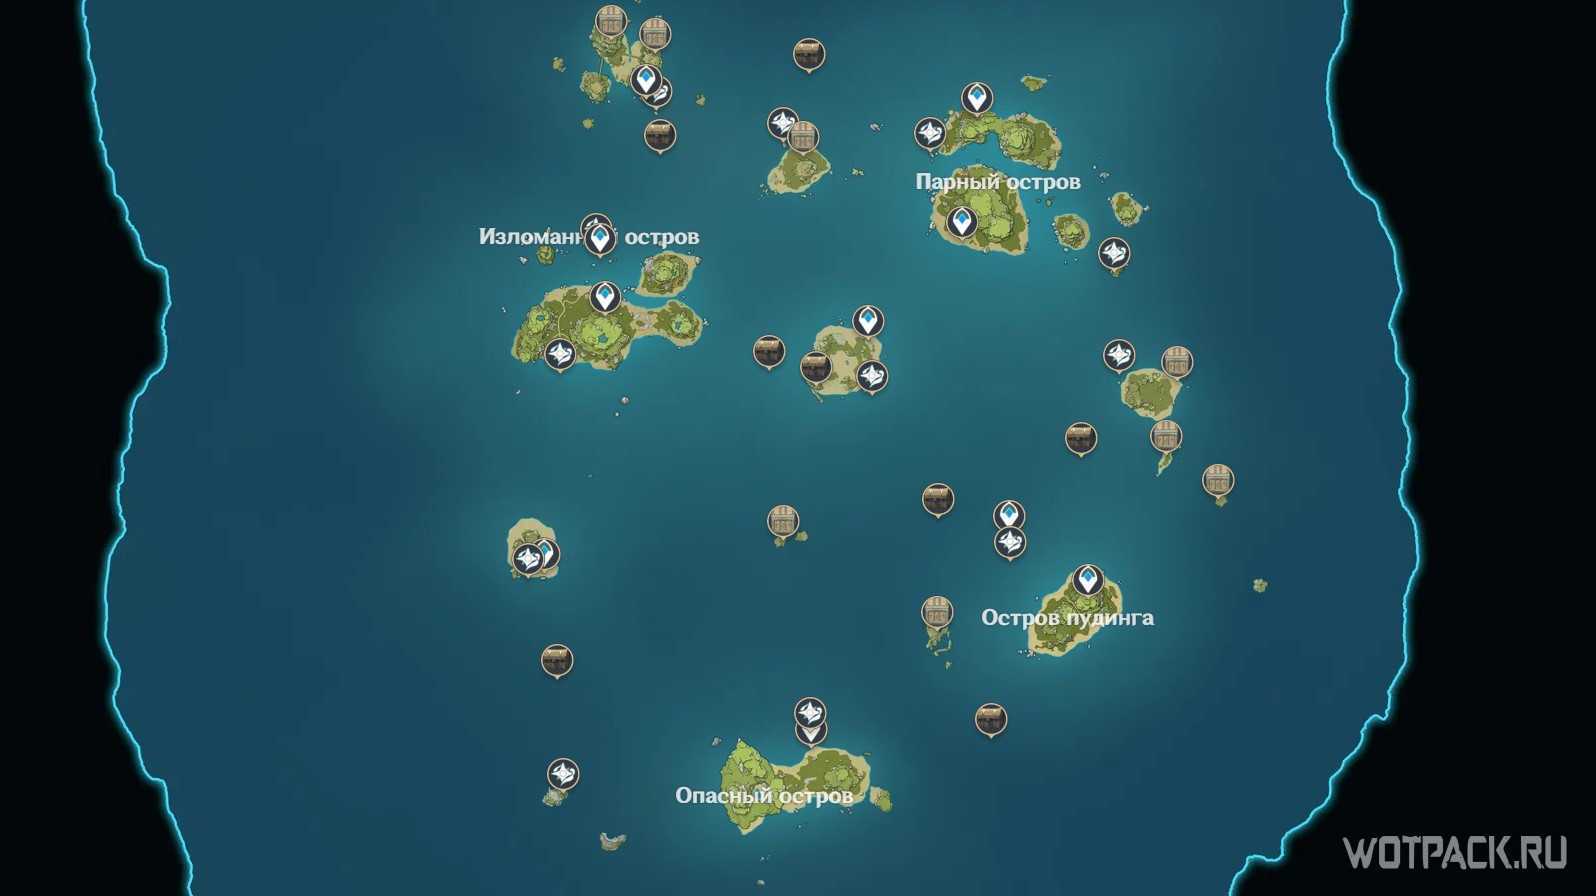 Все головоломки и загадки на архипелаге золотого яблока в genshin impact 2.8